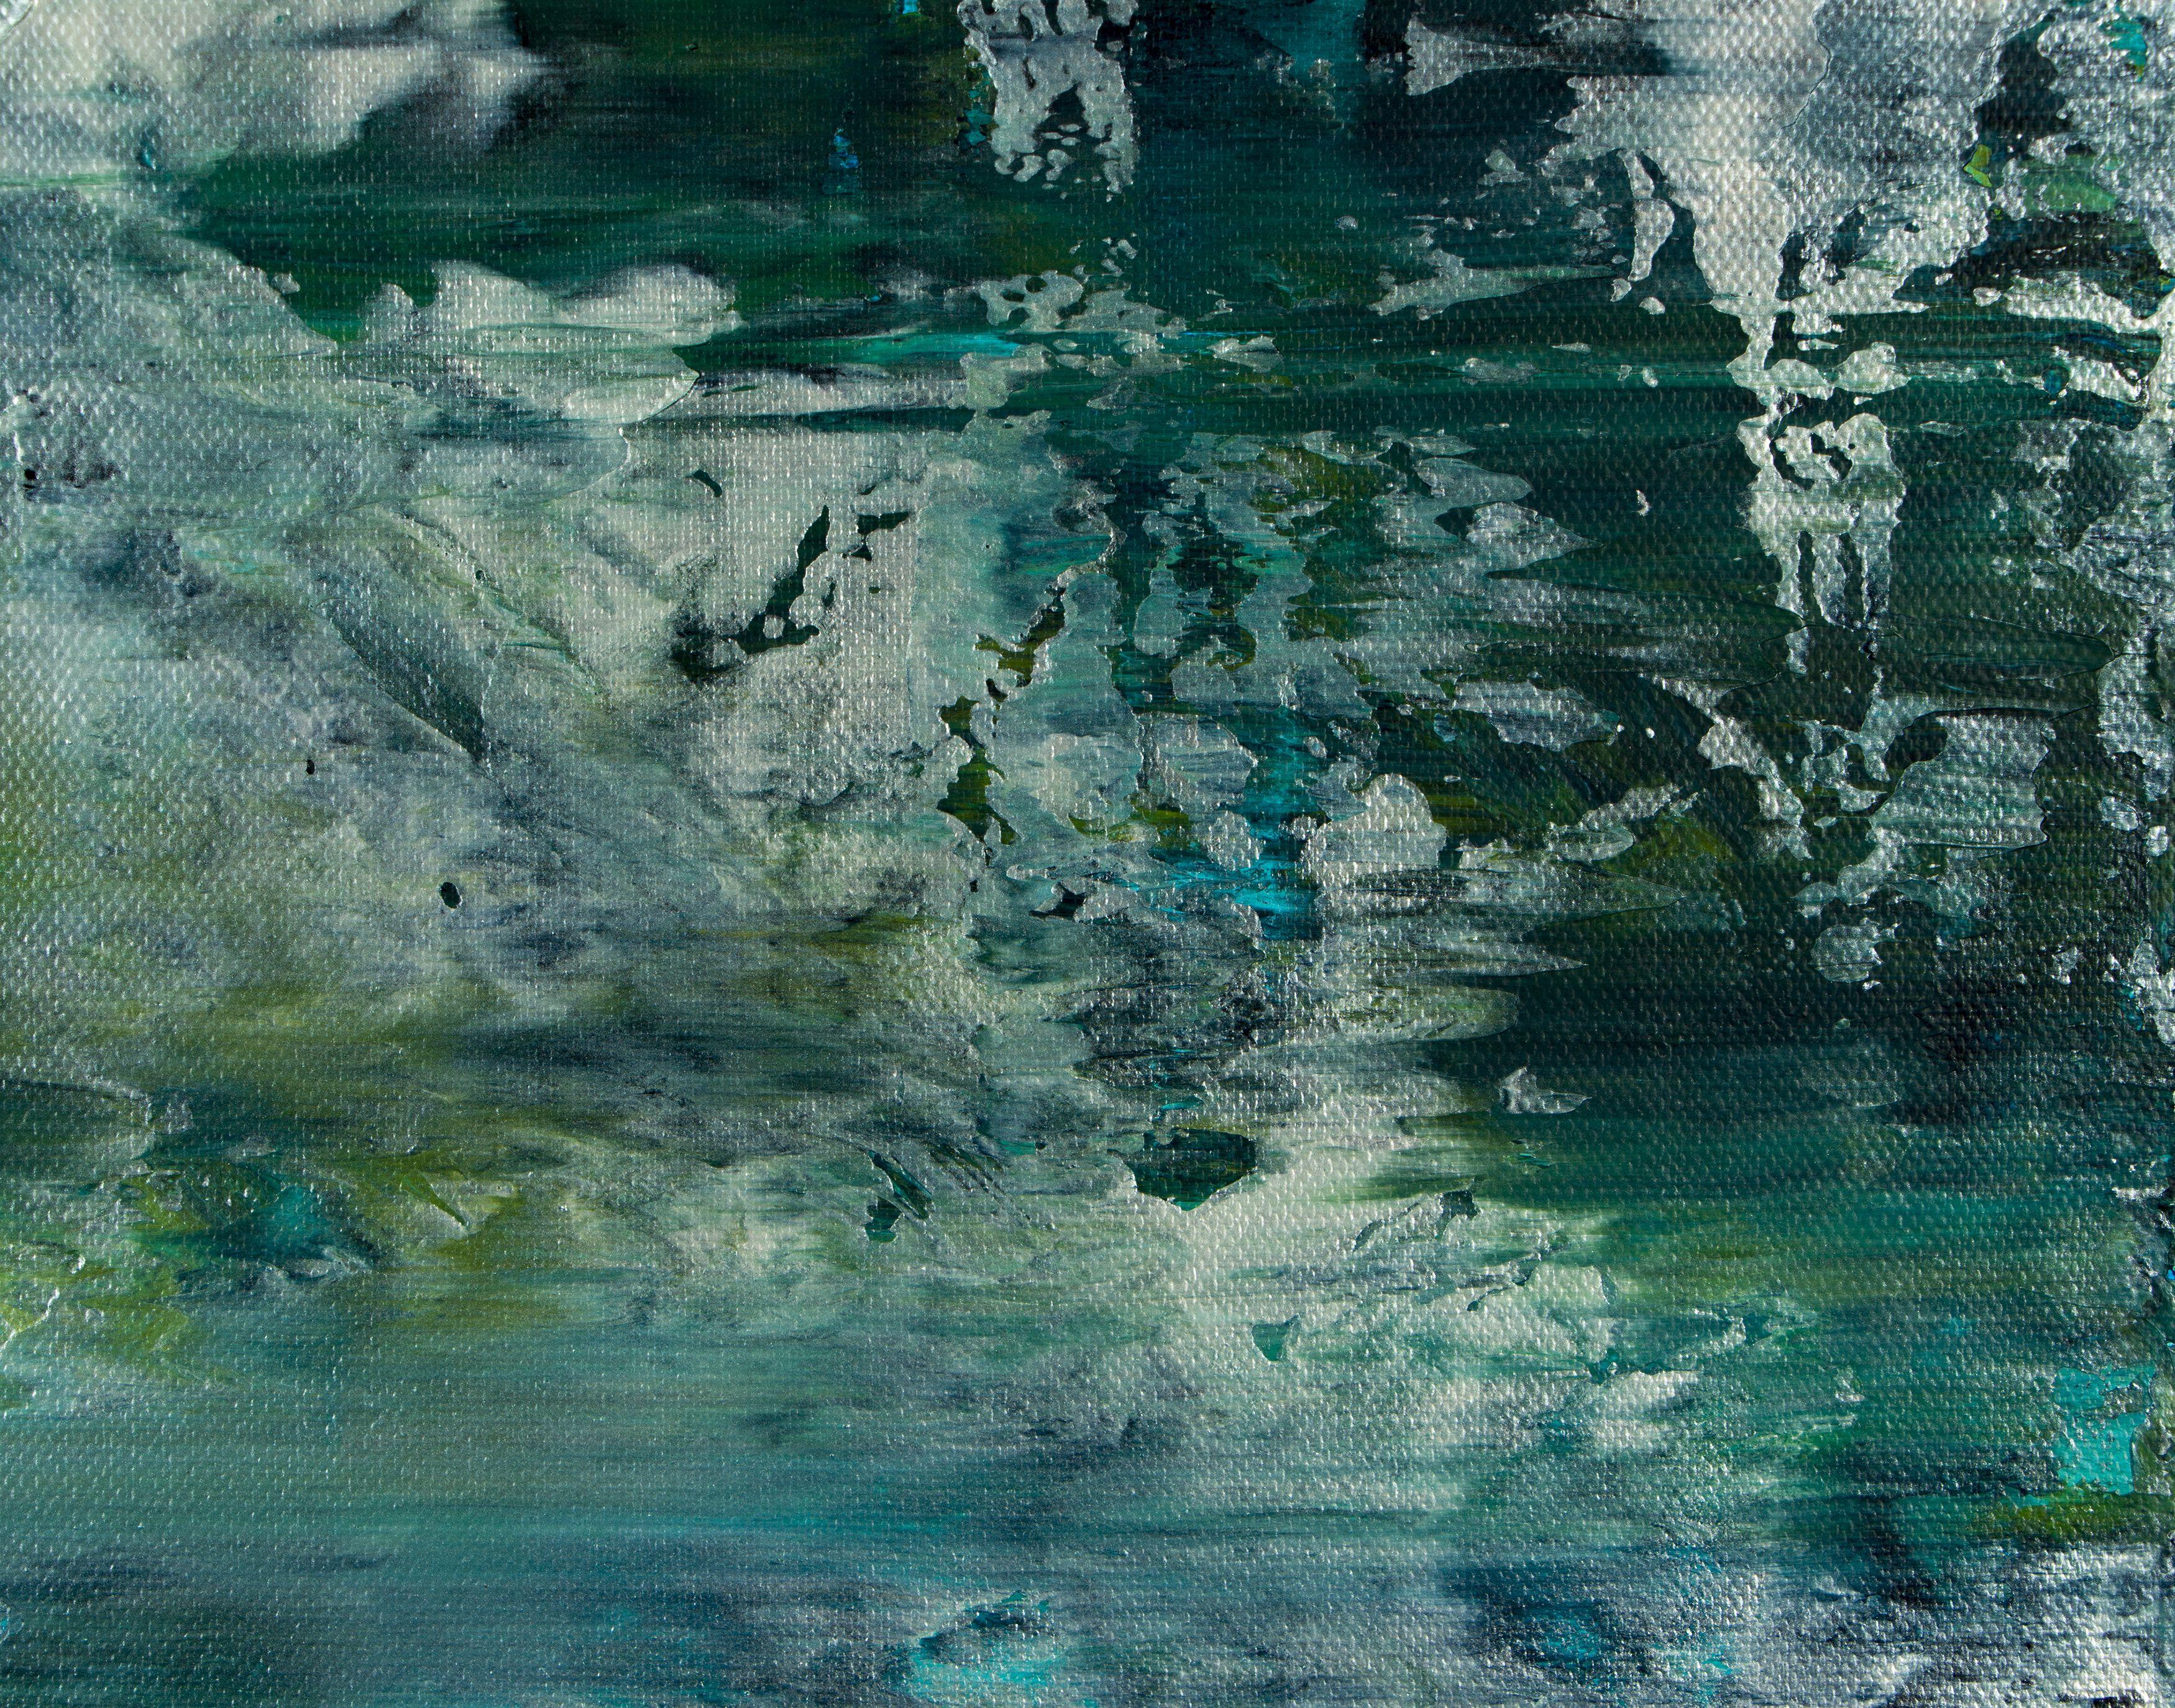 Gemälde: Acryl auf Leinwand.    Abstrakt mit Grün-, Grün-, Blau-, Grau- und Silberschattierungen mit glänzender Oberfläche. Erstellt mit Spachteln und fein strukturierten Schichten. Vorne signiert. Bereit zum Aufhängen    Ich lege ein